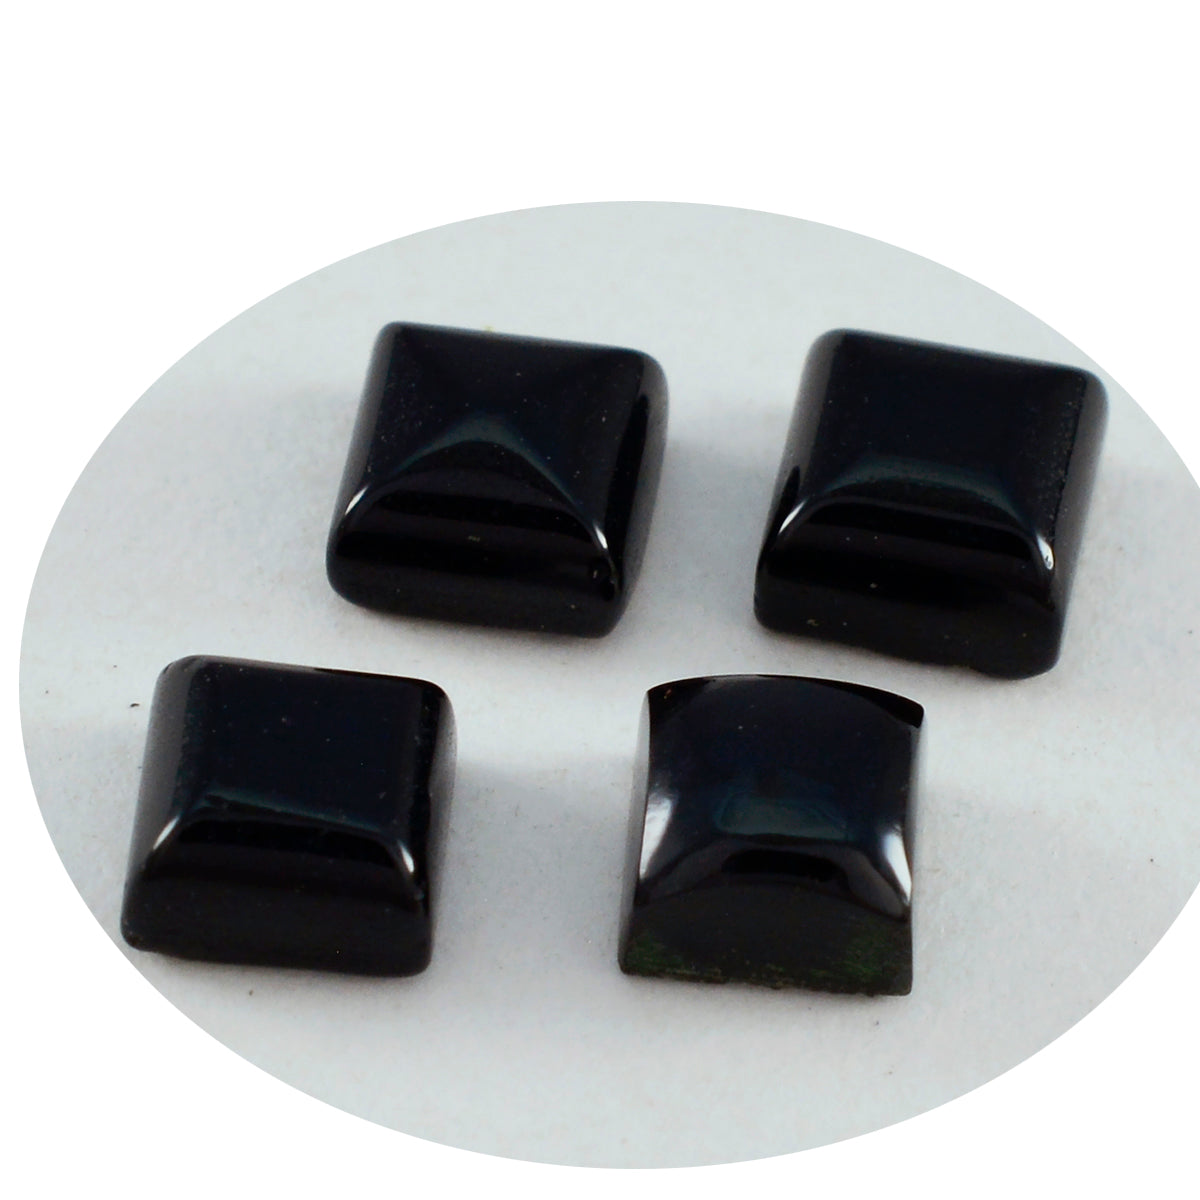 Riyogems 1PC Black Onyx Cabochon 9x9 mm vierkante vorm fantastische kwaliteit losse steen